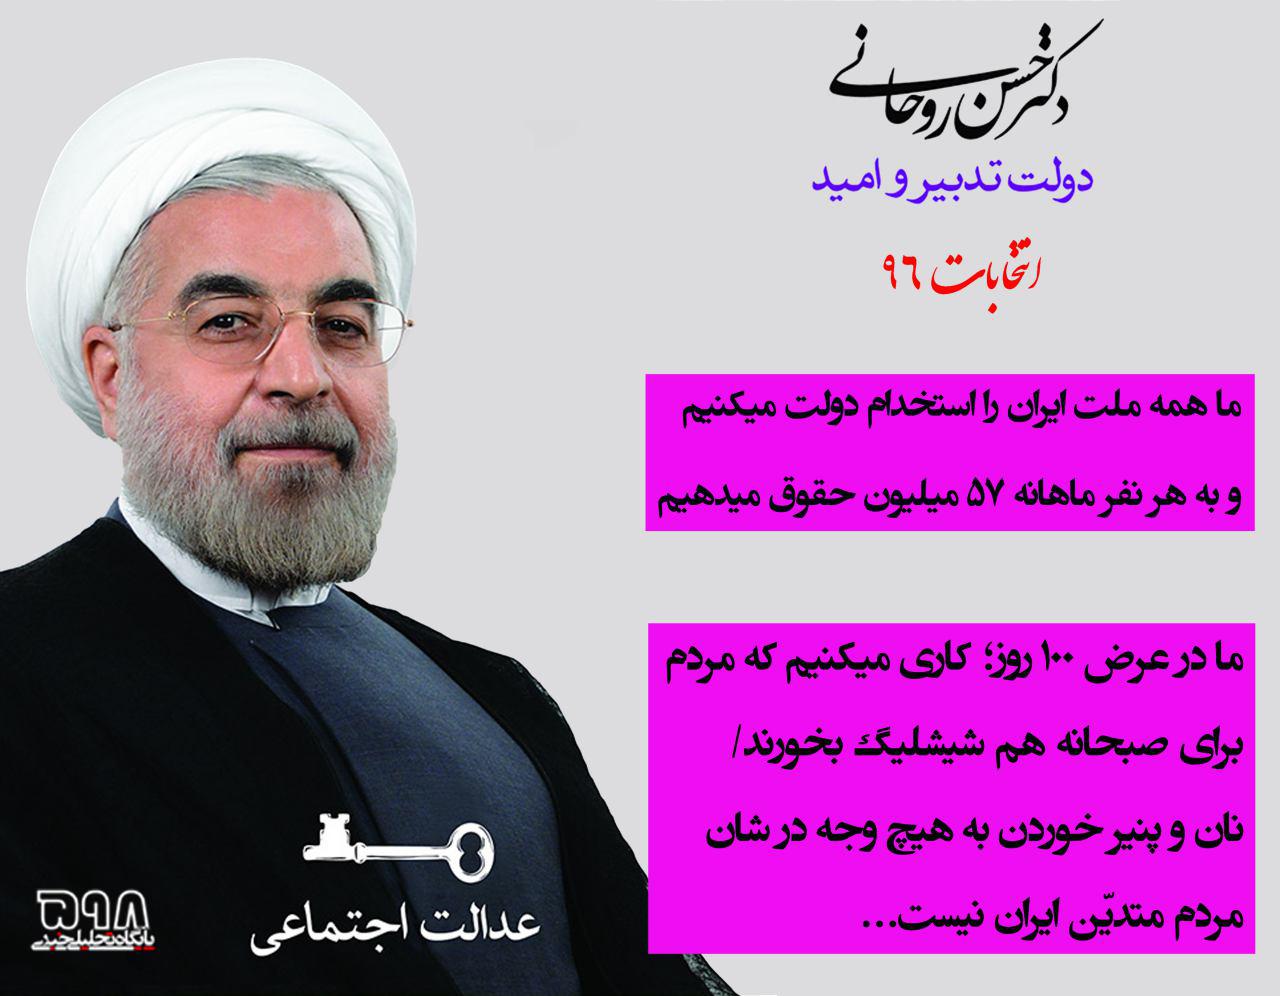 پوستر انتخاباتی روحانی برای سال 96 رسید...!